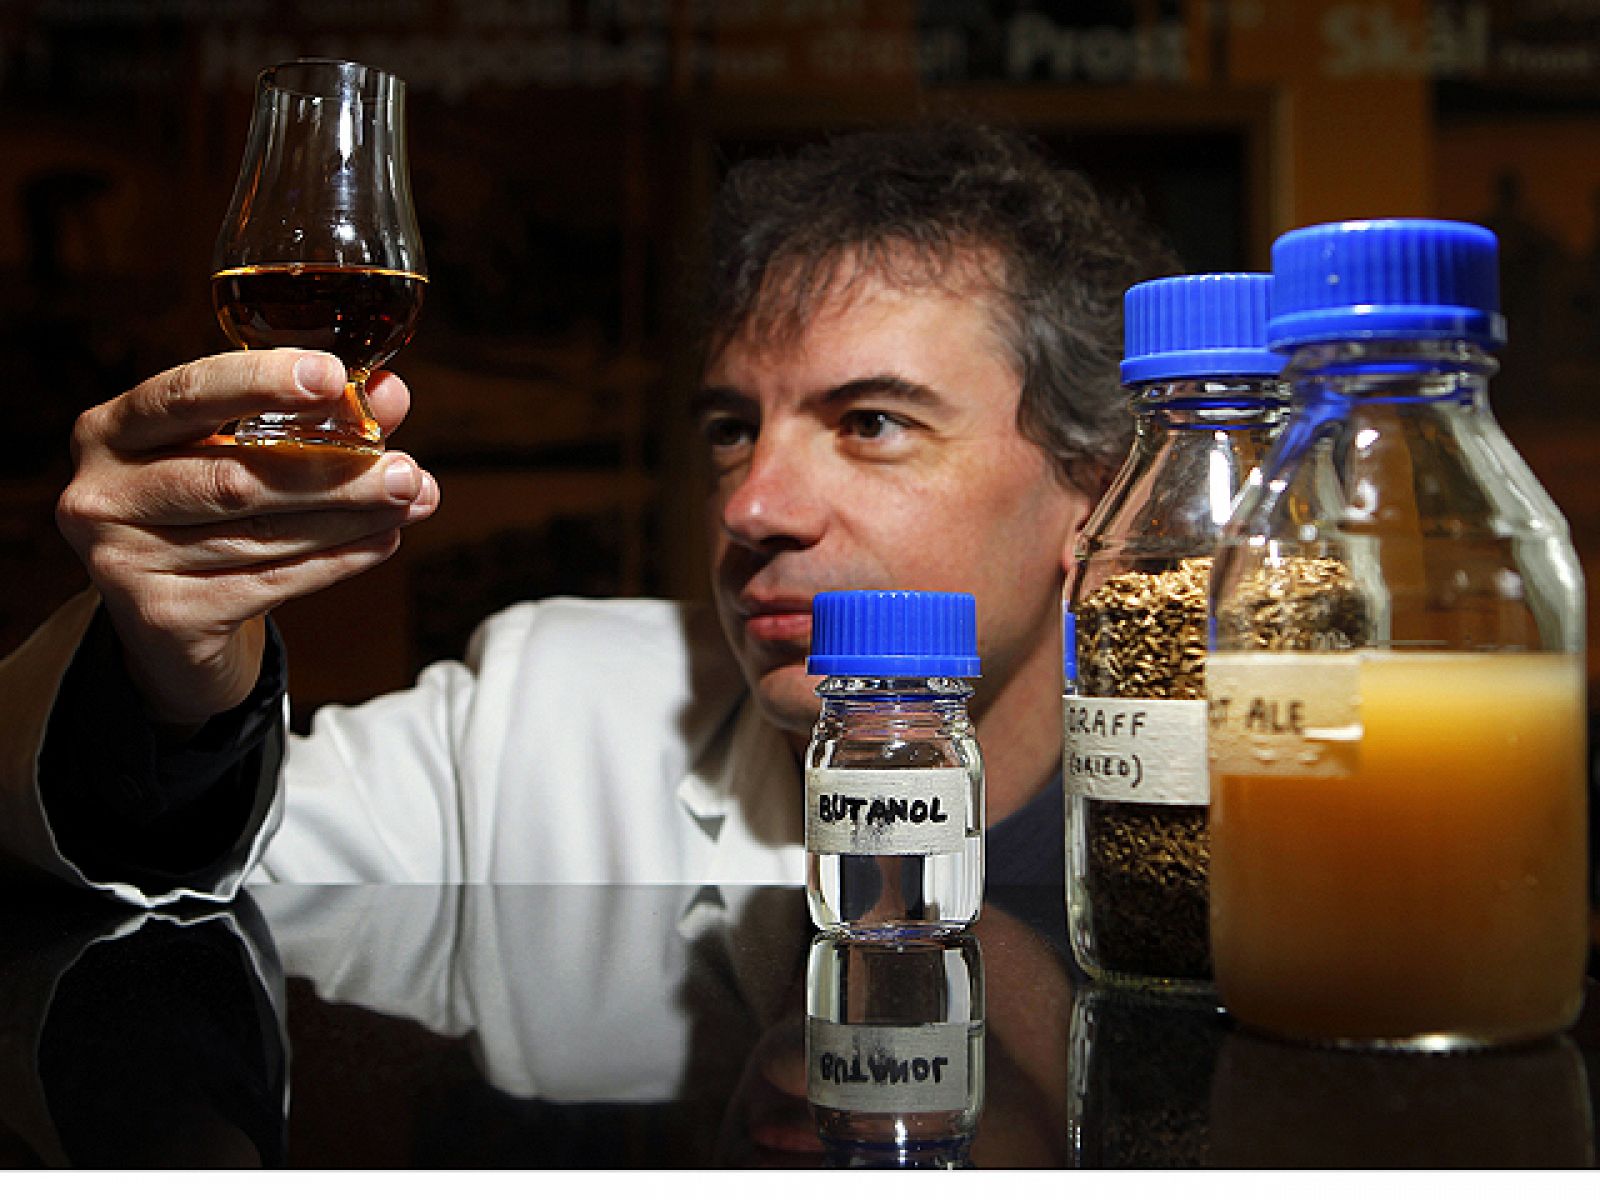 El escocés Matin Tangney, el director del centro de investigaciones sobre biocombustibles, sostiene una copa de whisky.scocés, sostiene una copa de whisky.